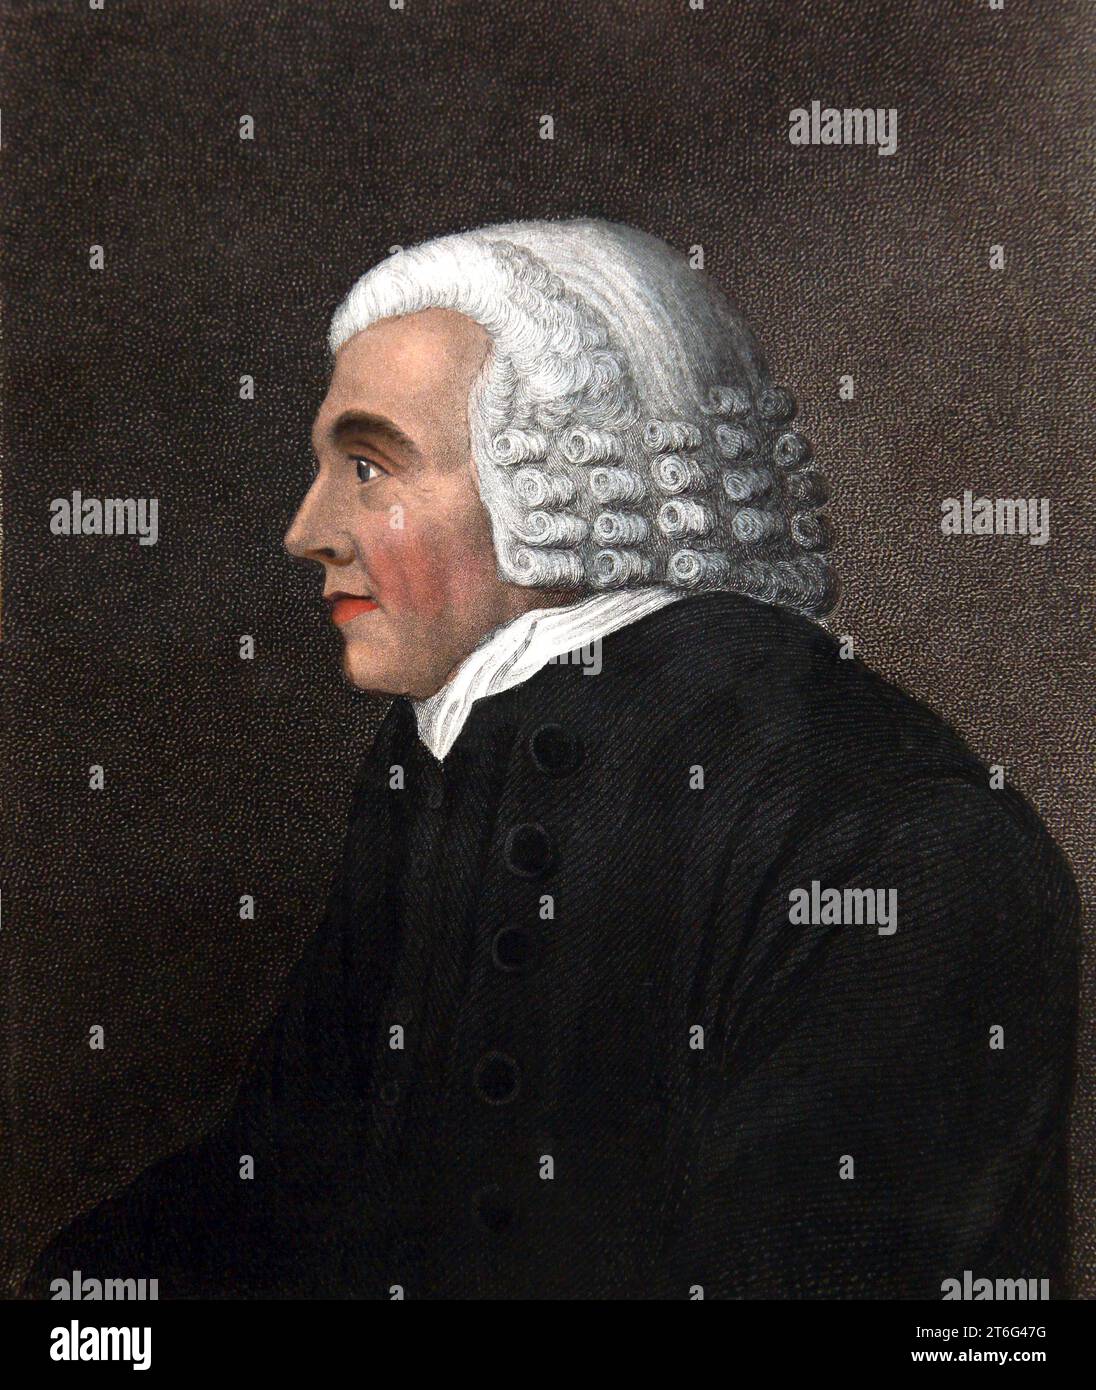 Ritratto del reverendo John Brown 1722-1787, defunto ministro del Vangelo di Haddington, ministro scozzese autore e teologo dell'autointerpretazione Foto Stock